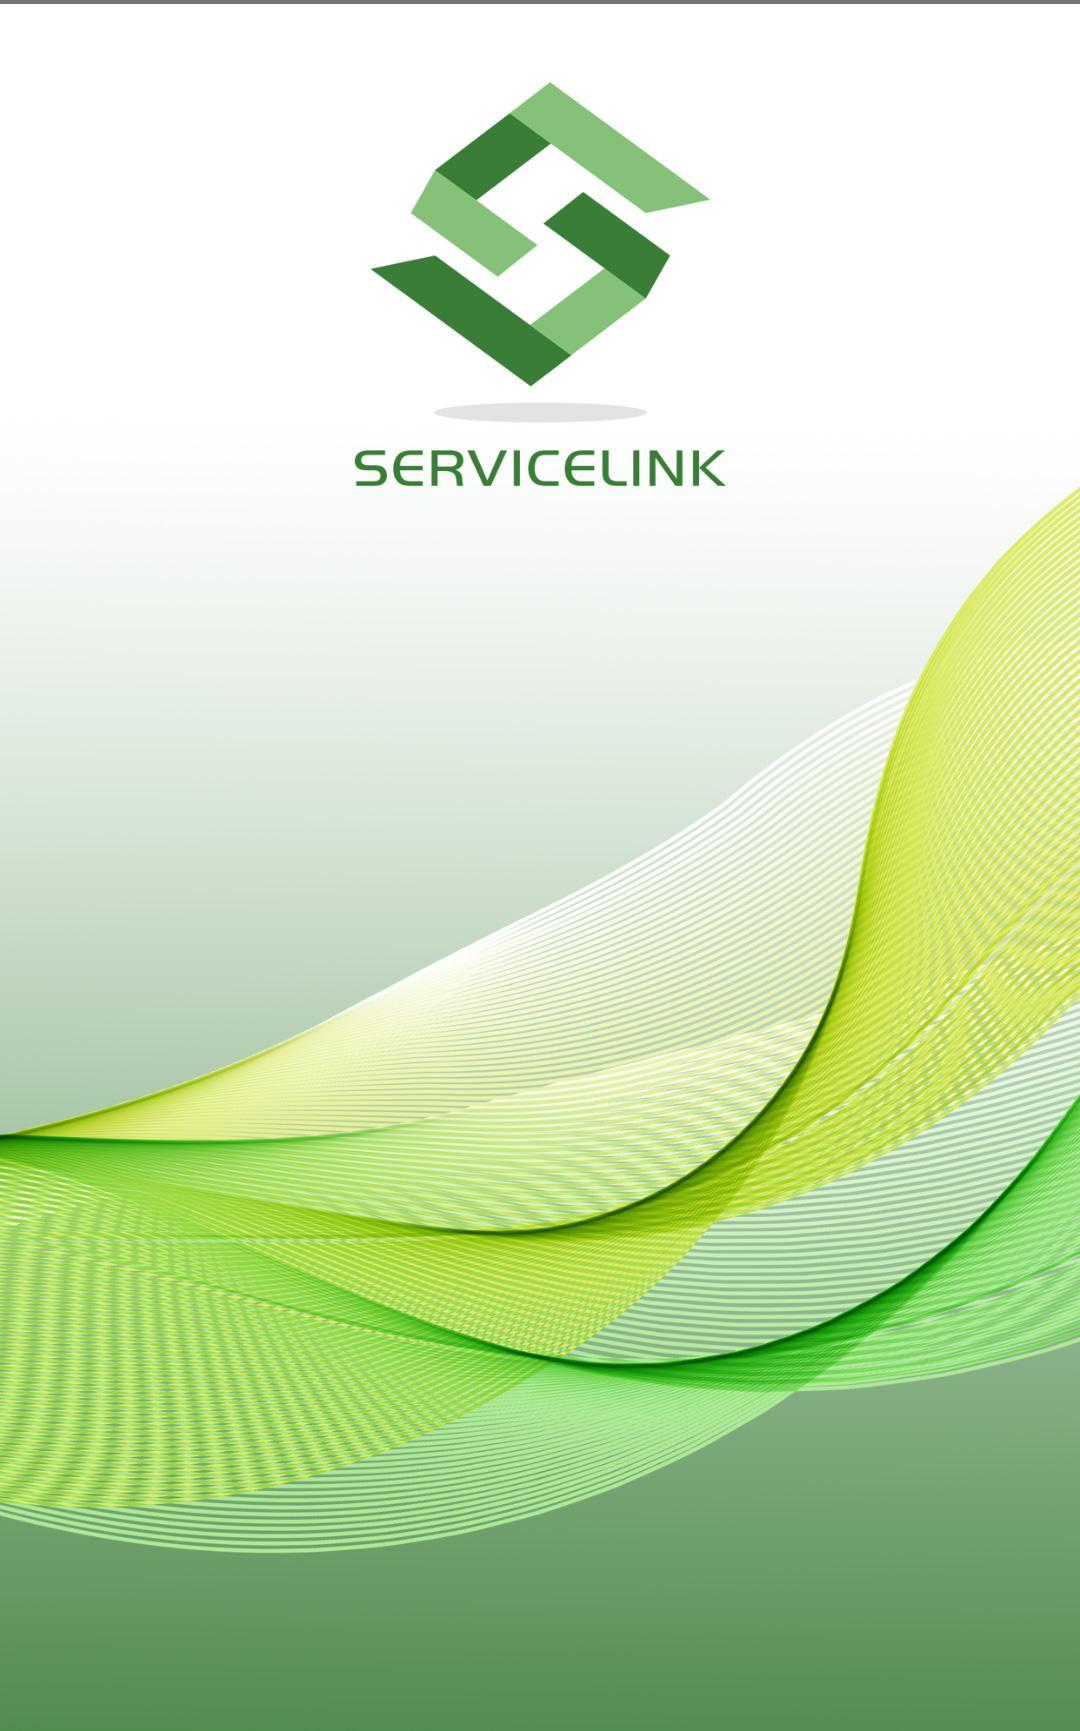 Link service ru